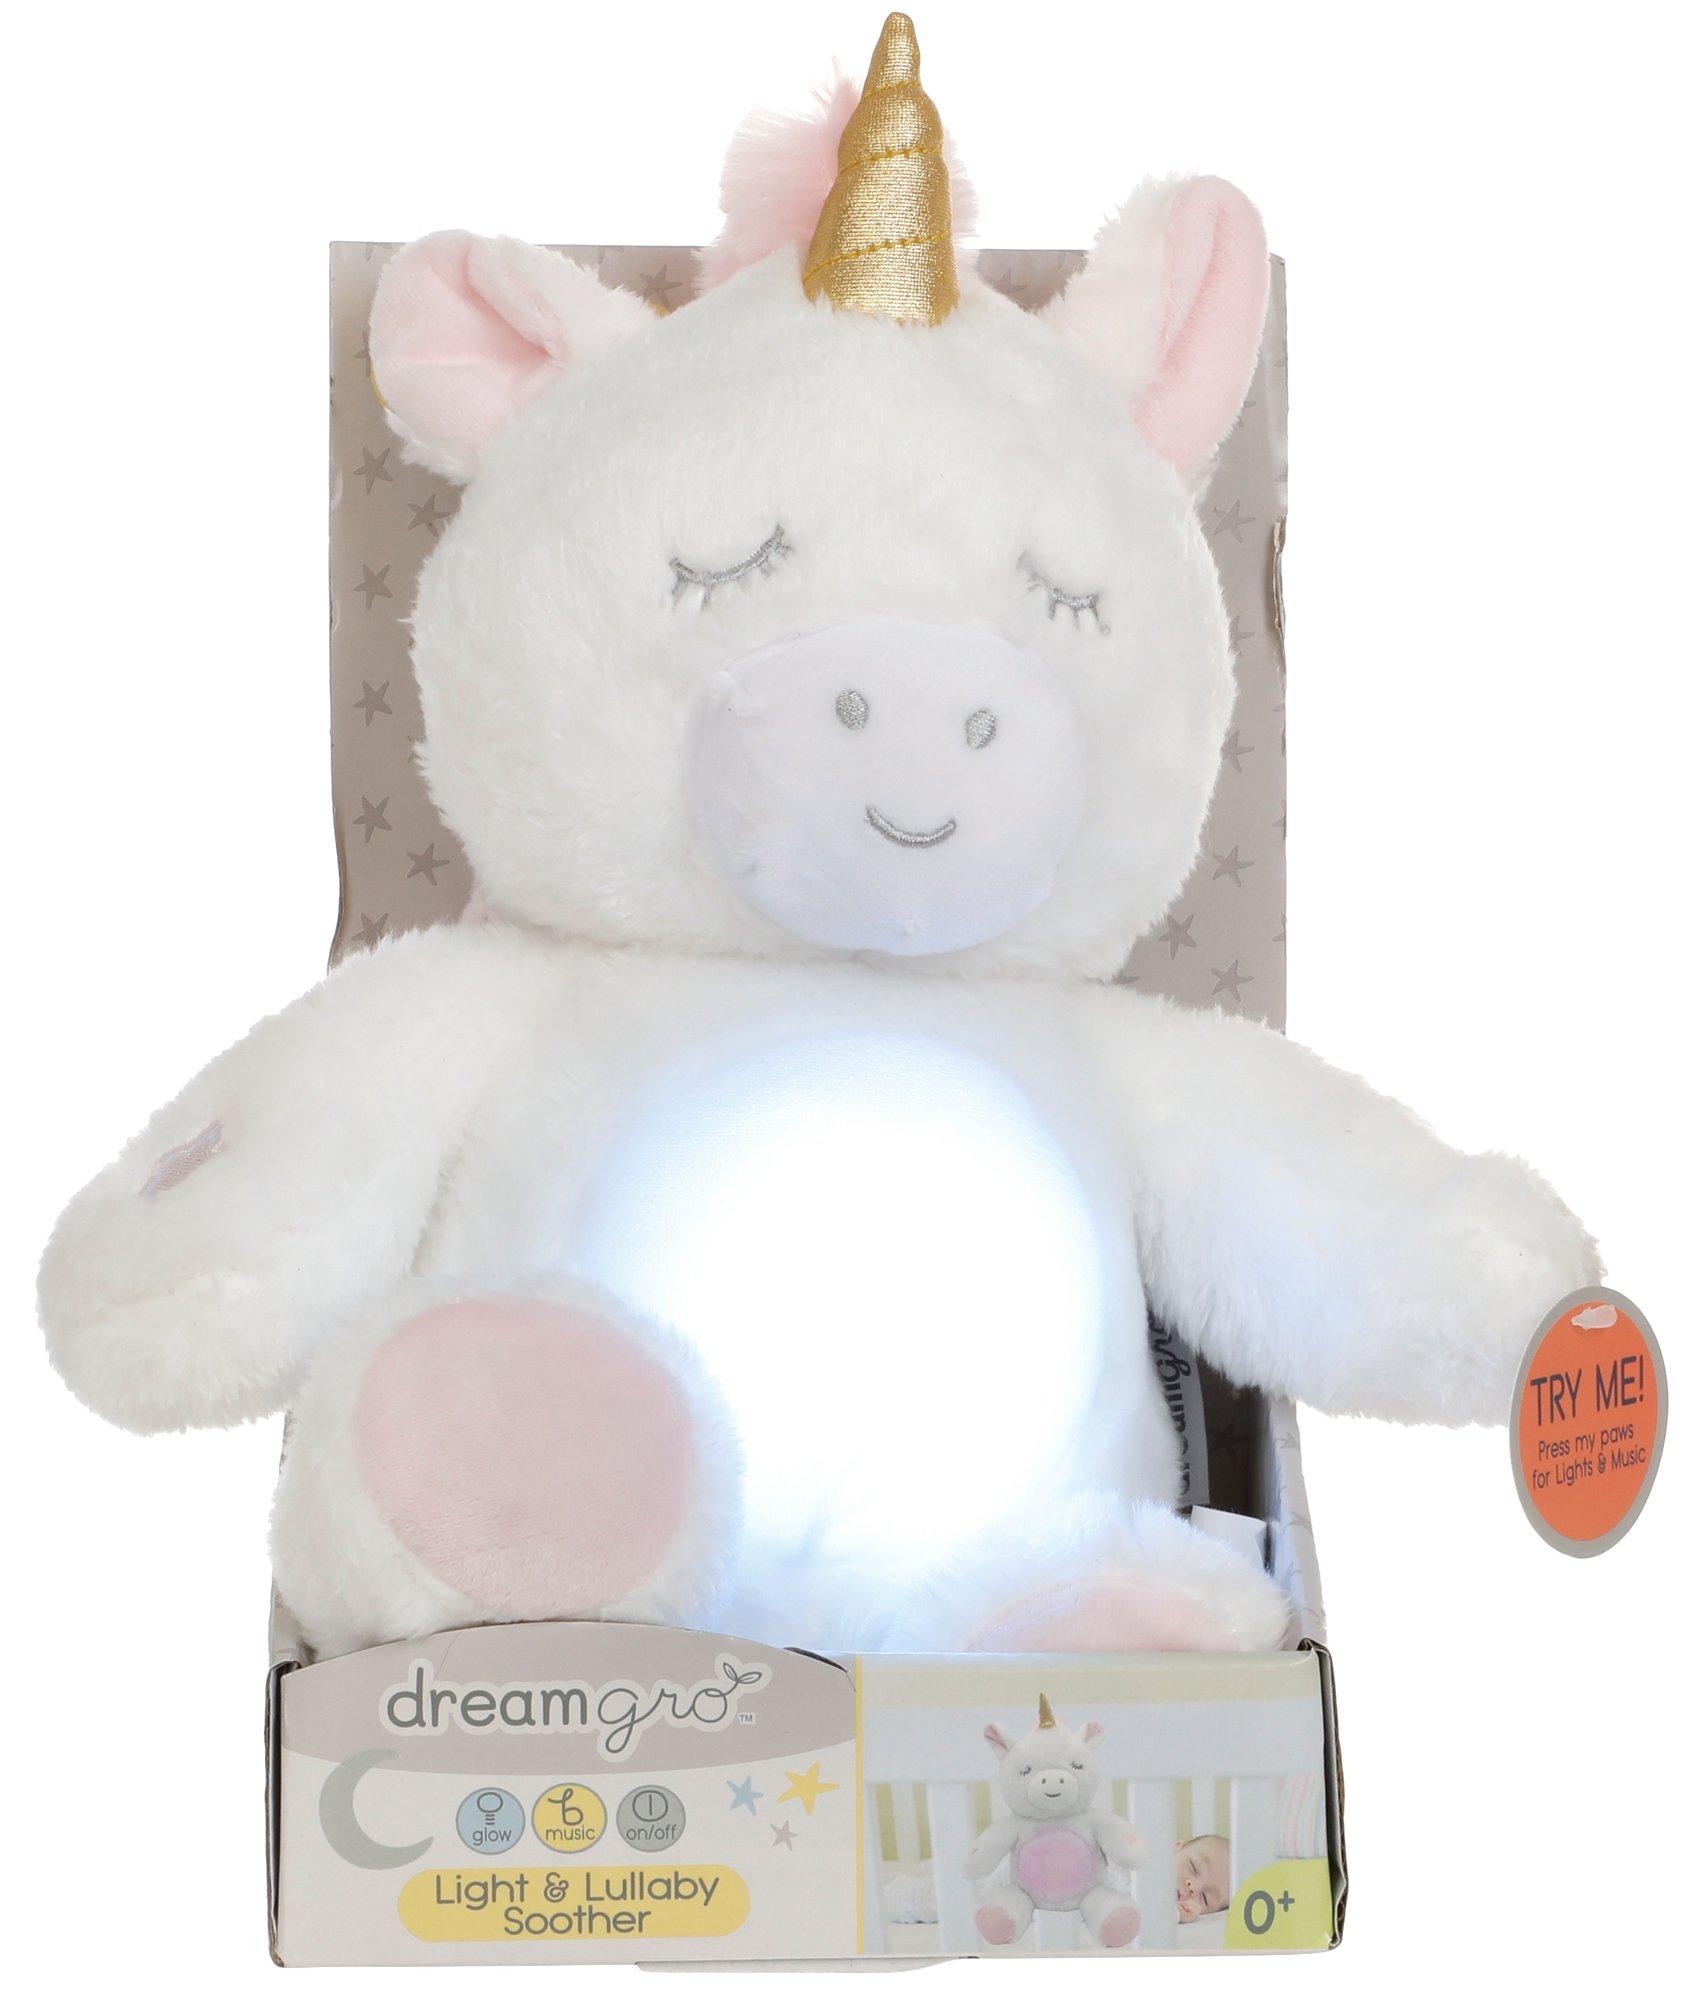 Light & Lullaby Unicorn Soothing Plush